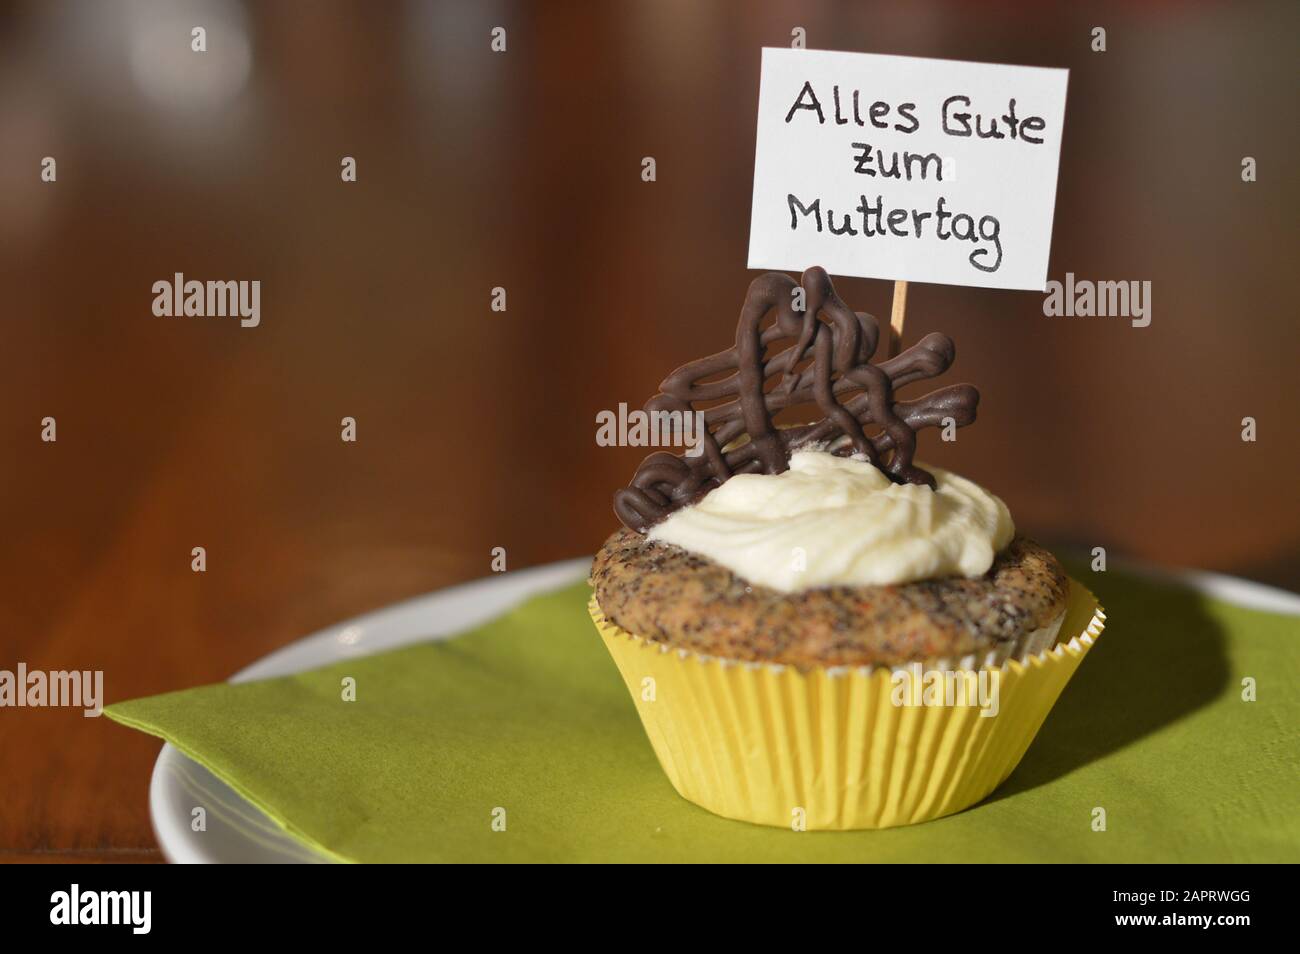 Cupcake mit einem Hinweisschild: Alles GUTE ZUM MUTTERTAG auf Deutsch, was GLÜCKLICHEN MUTTERTAG auf einem Teller bedeutet Stockfoto